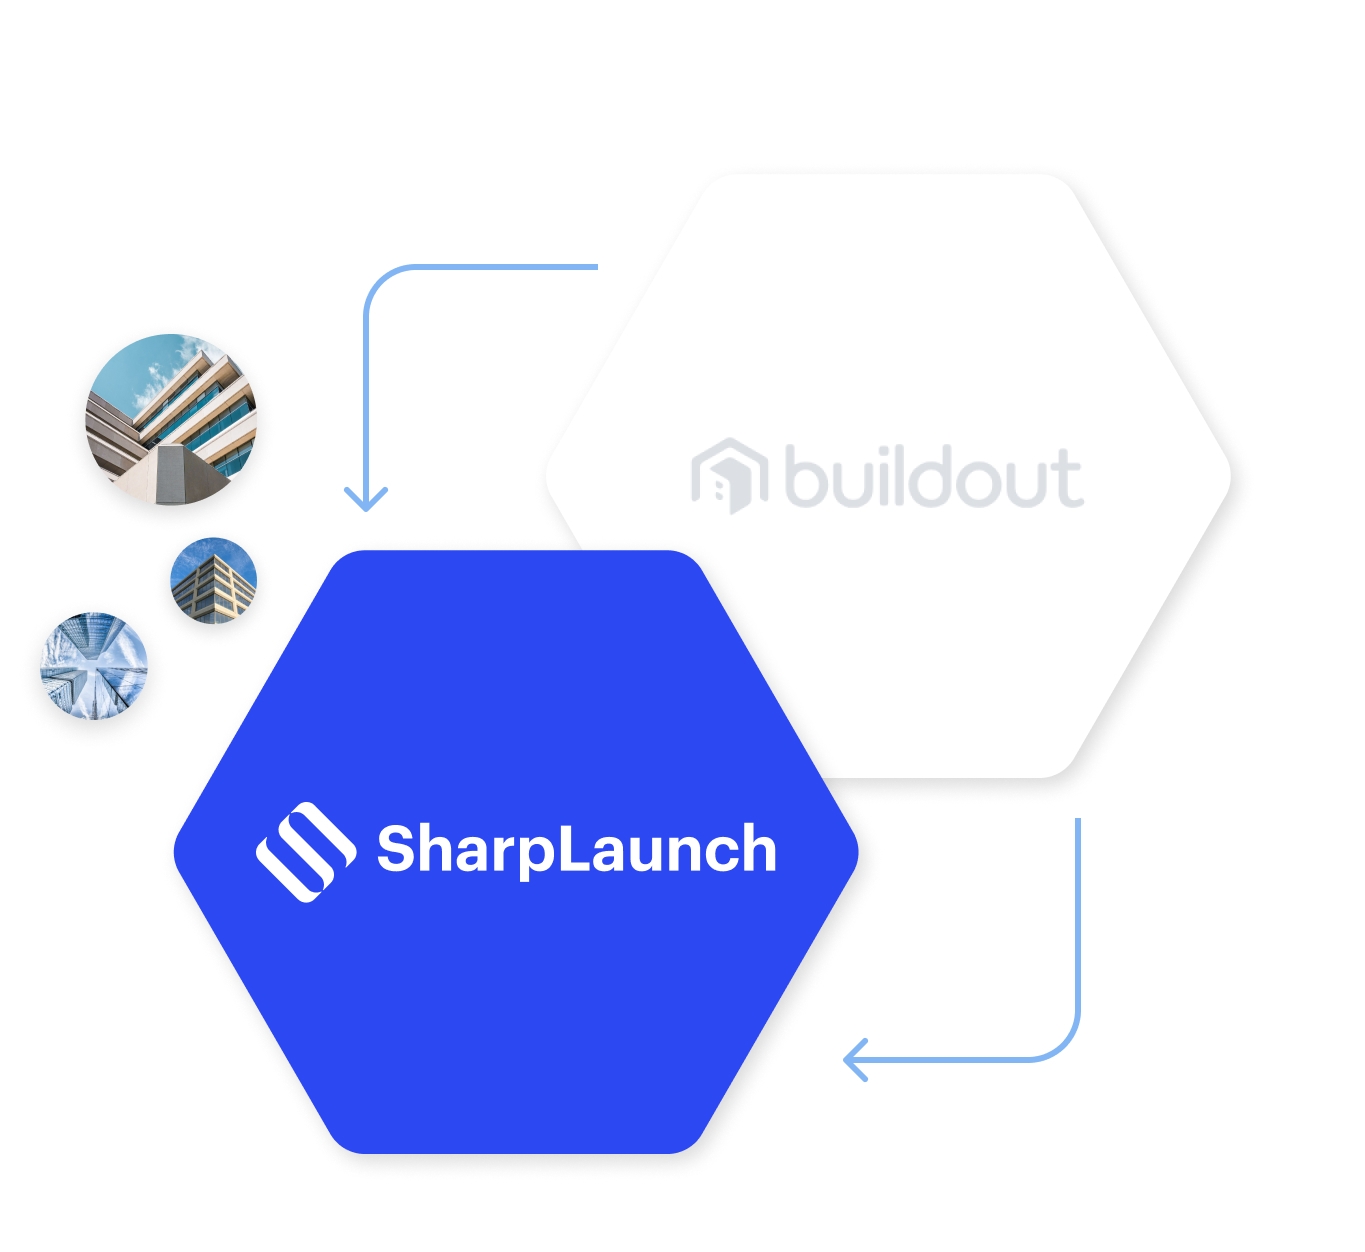 SharpLaunch<br> Beats Buildout: Your <br>Ultimate Comparison